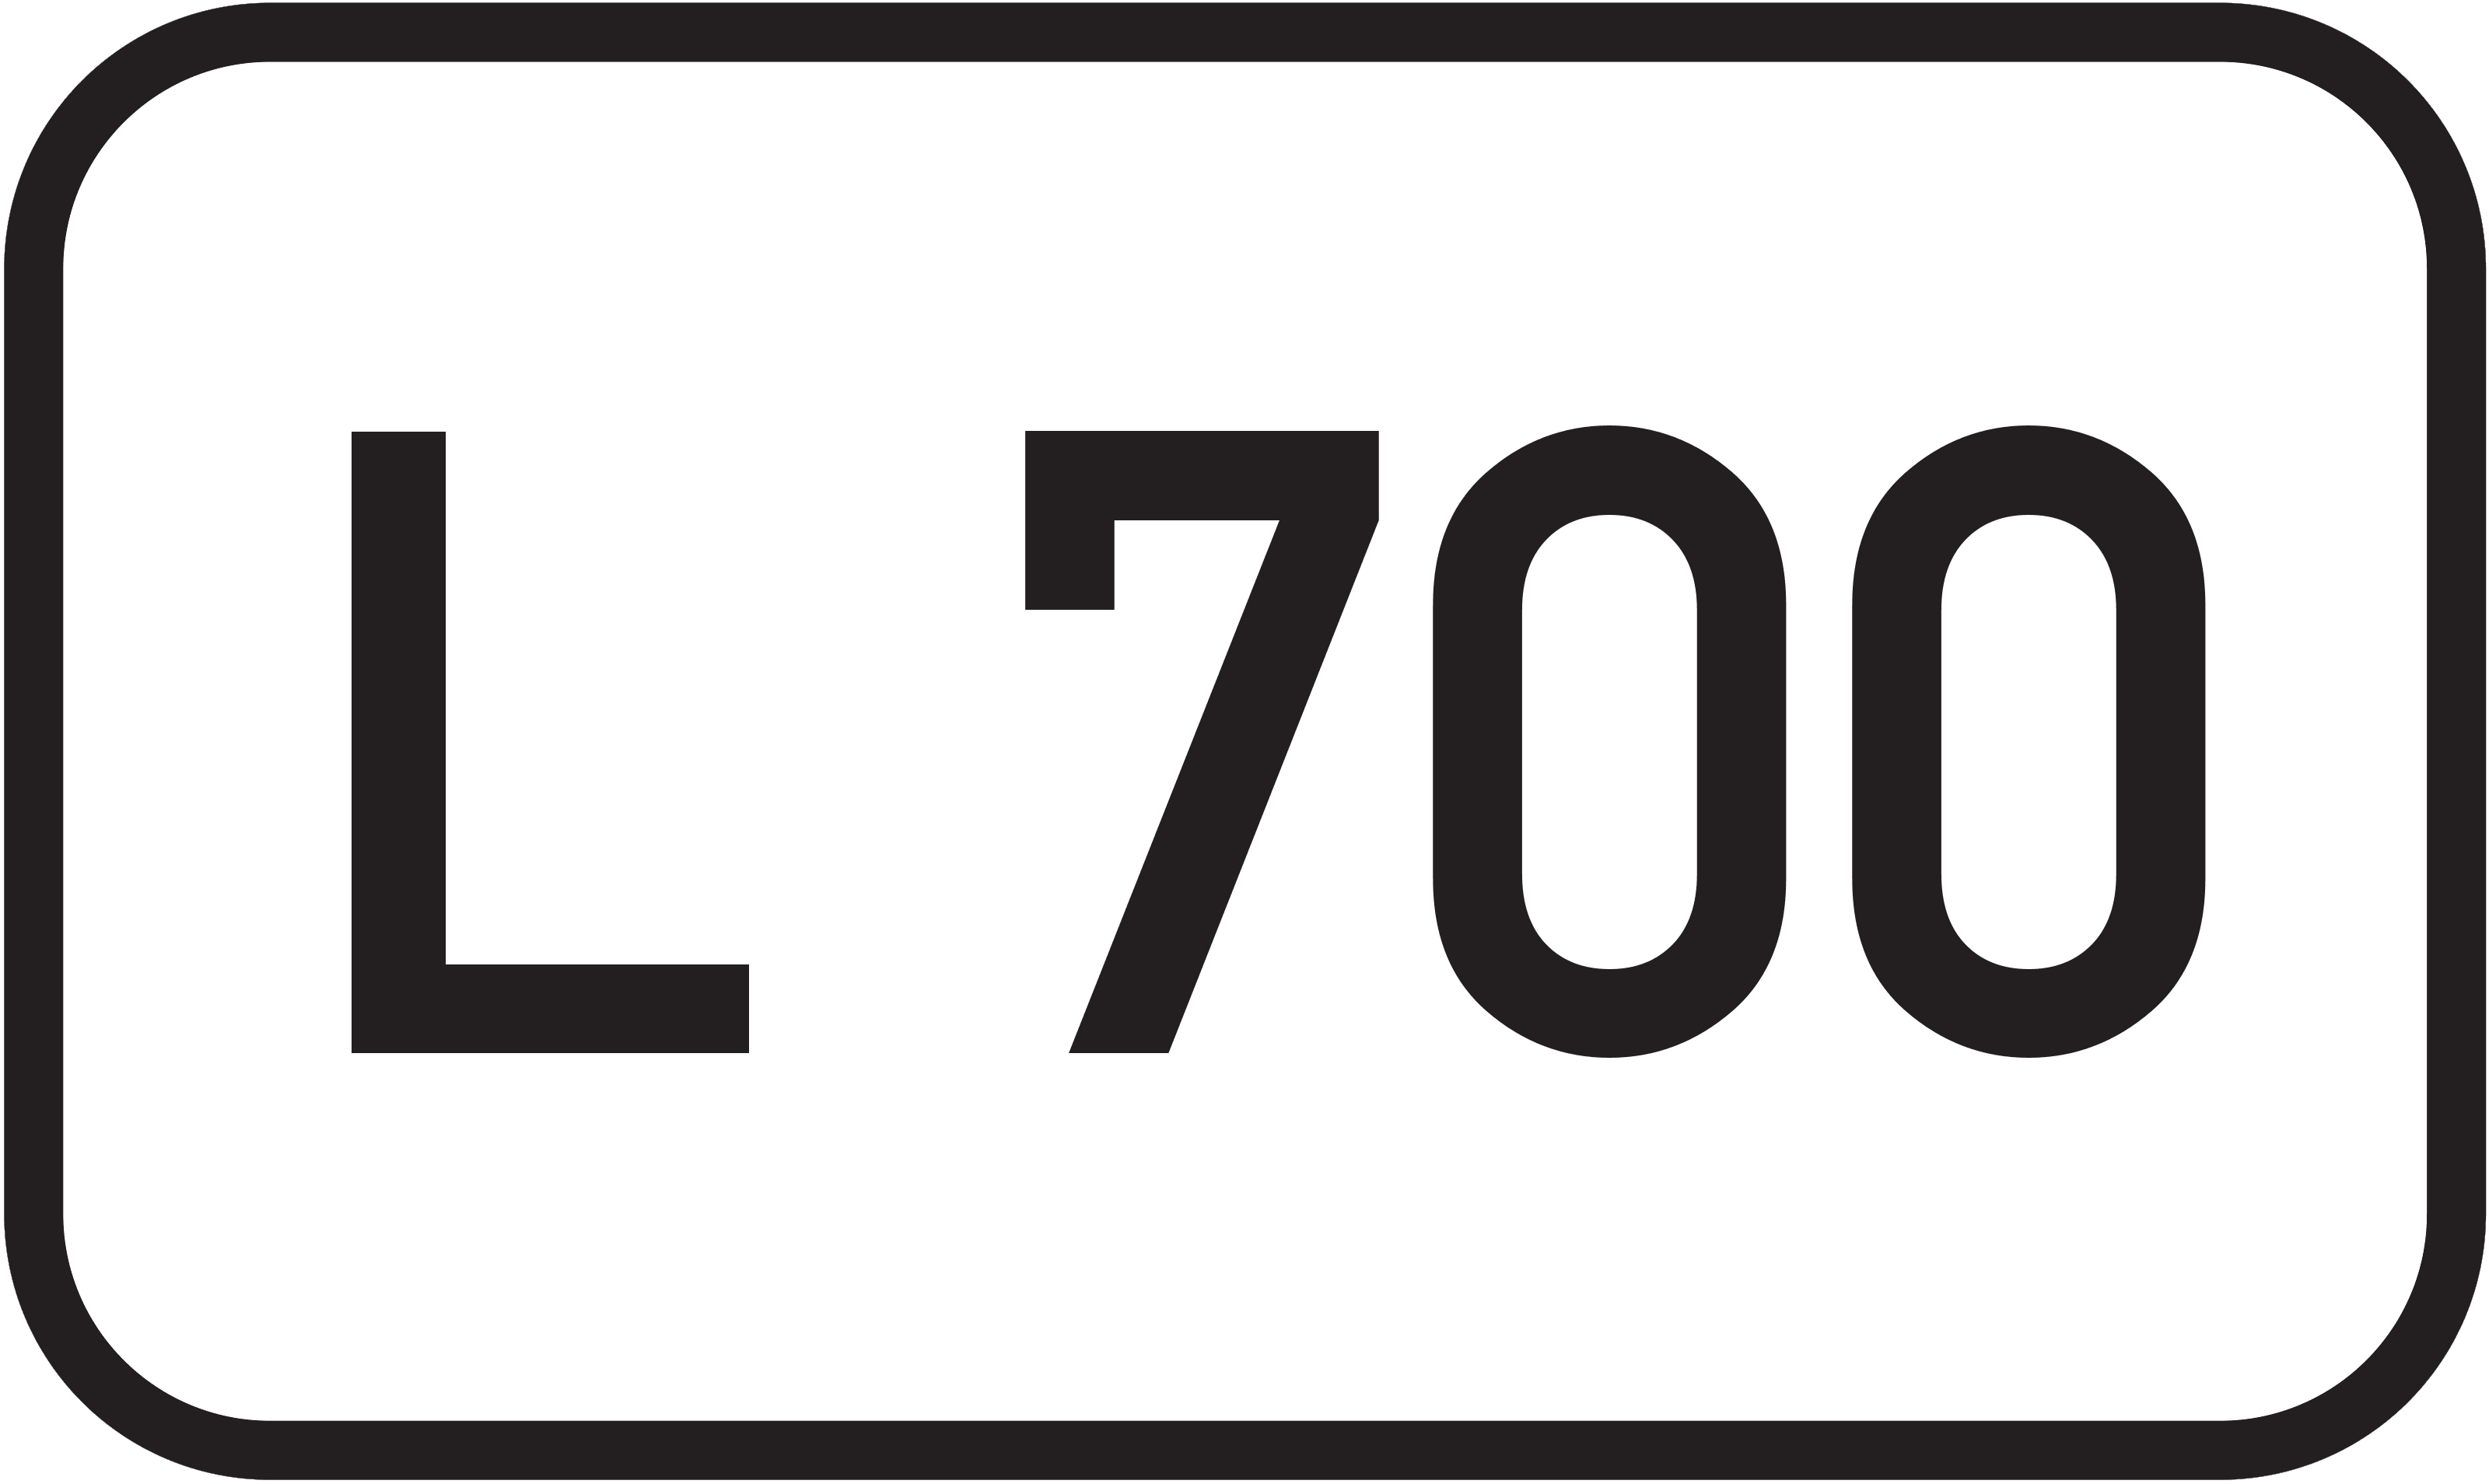 Landesstraße L 700